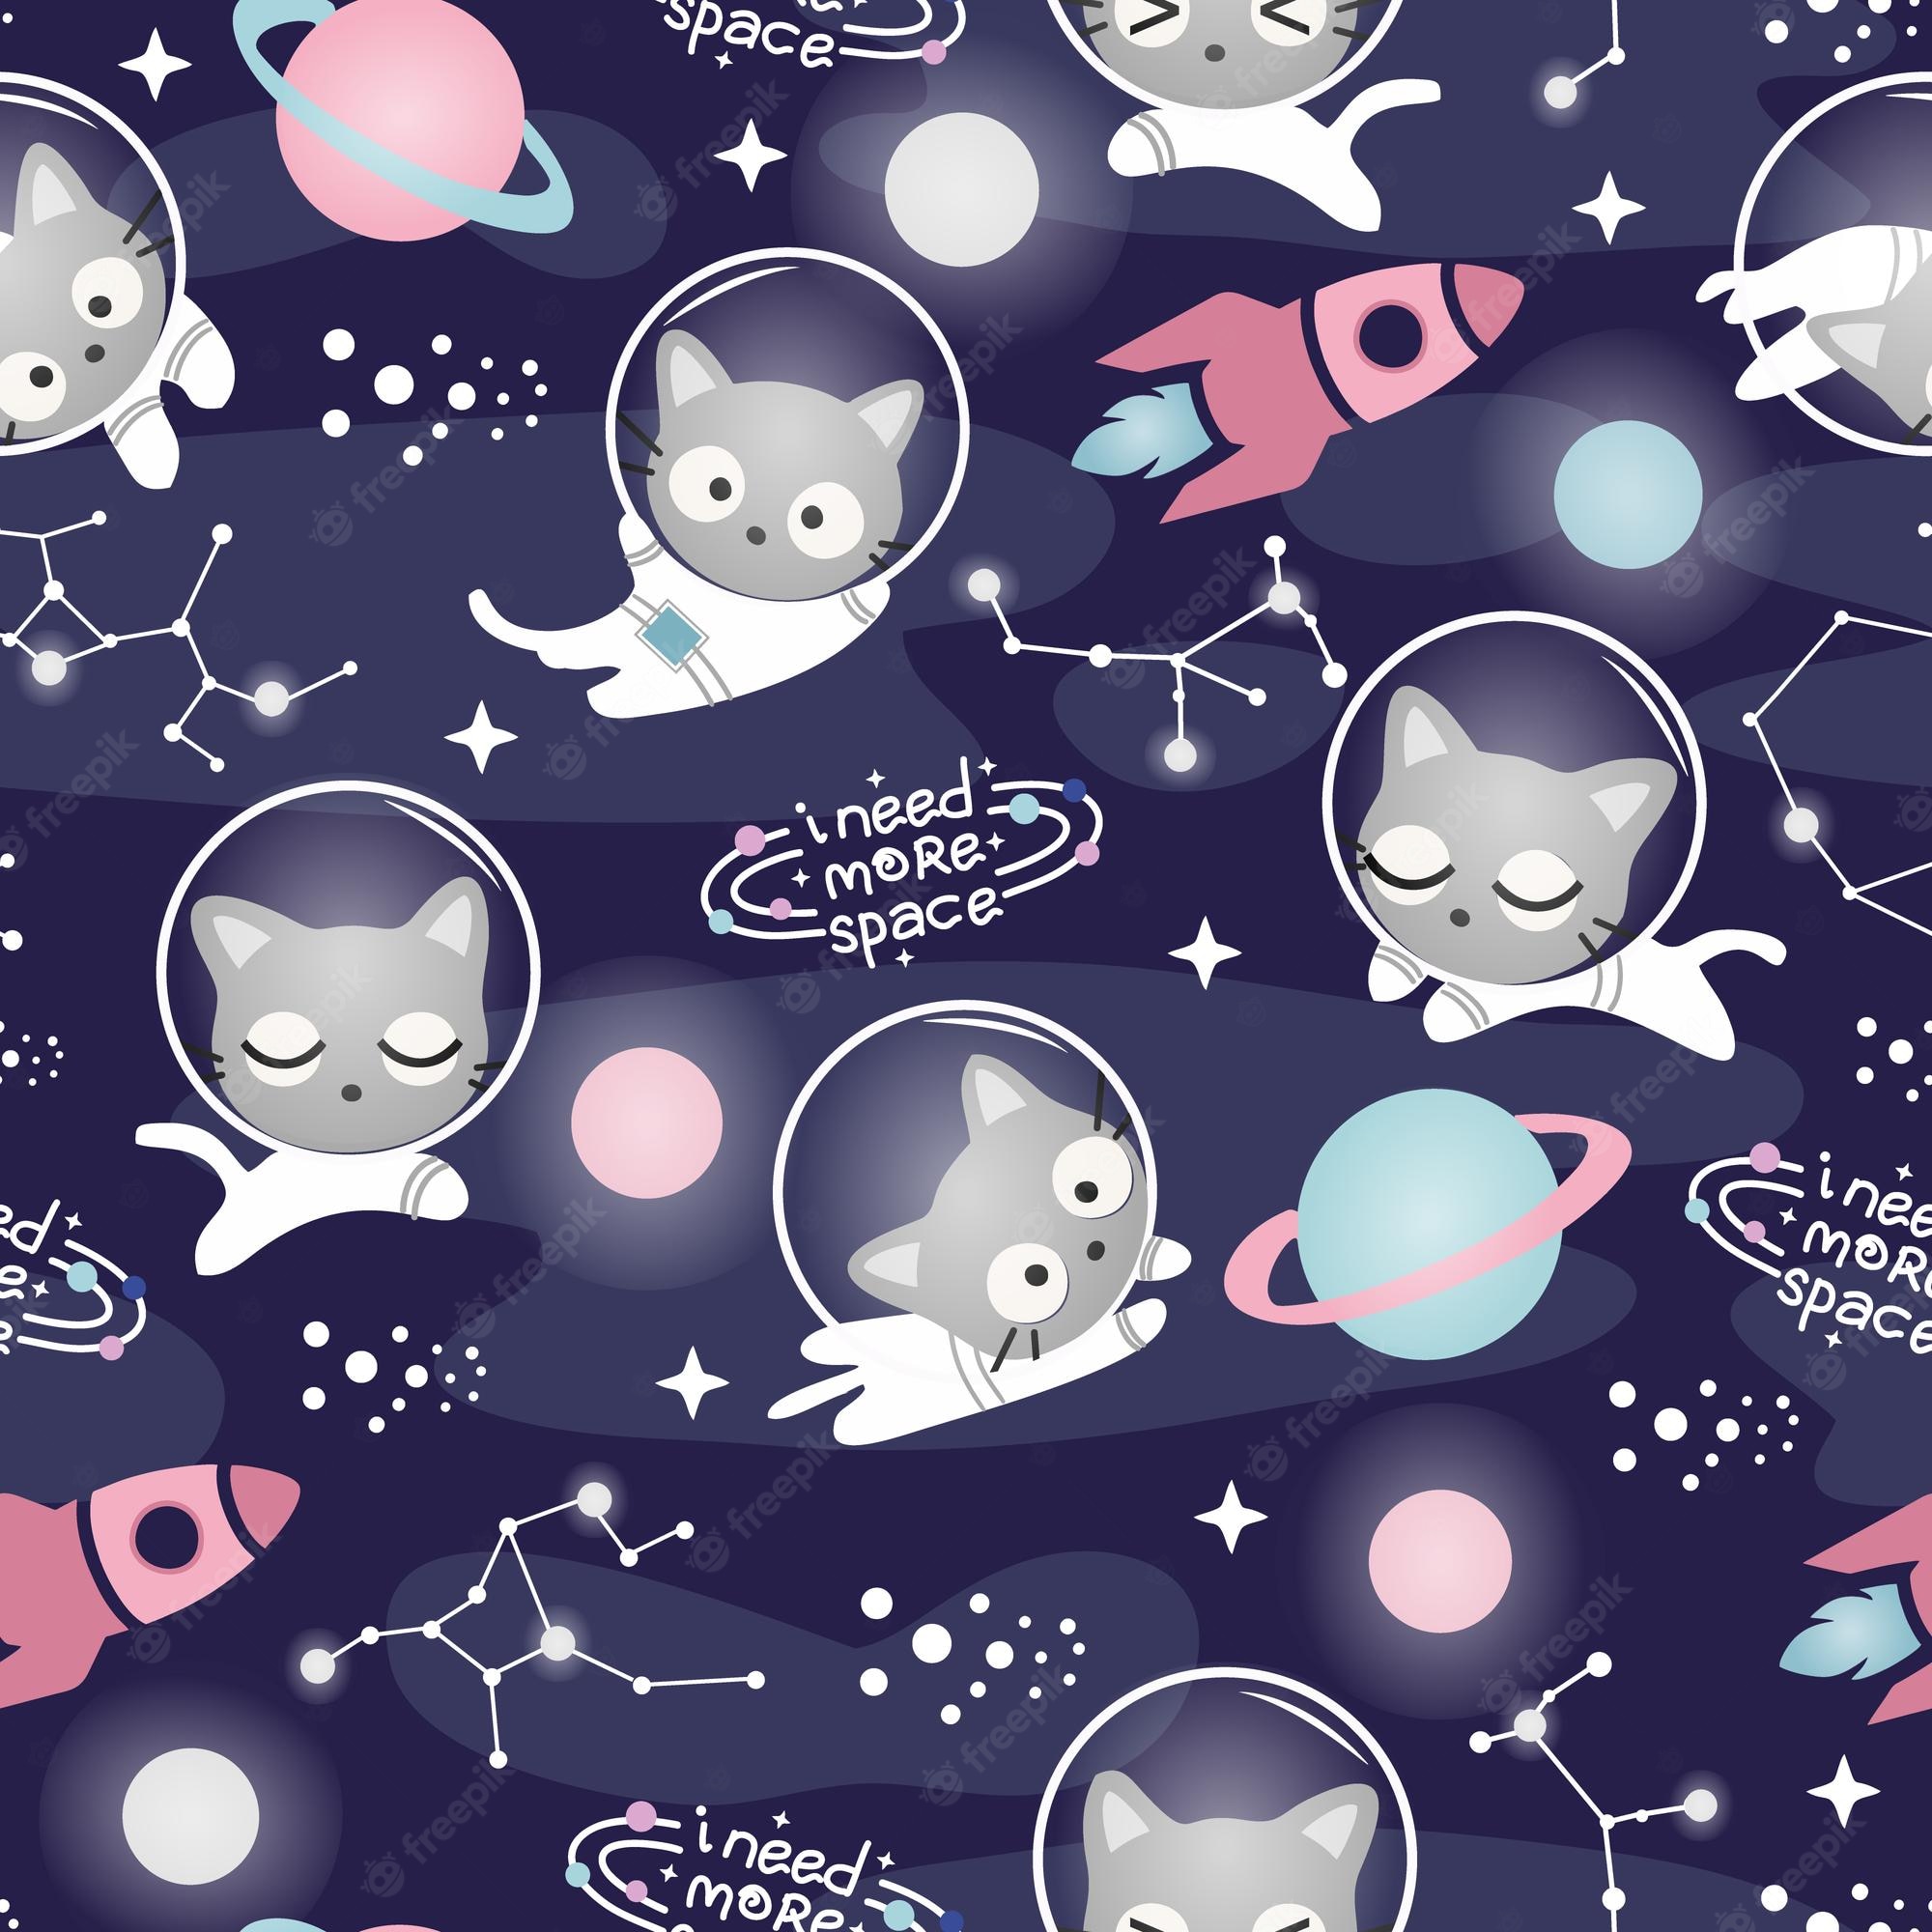 Cat Astronaut Wallpapers